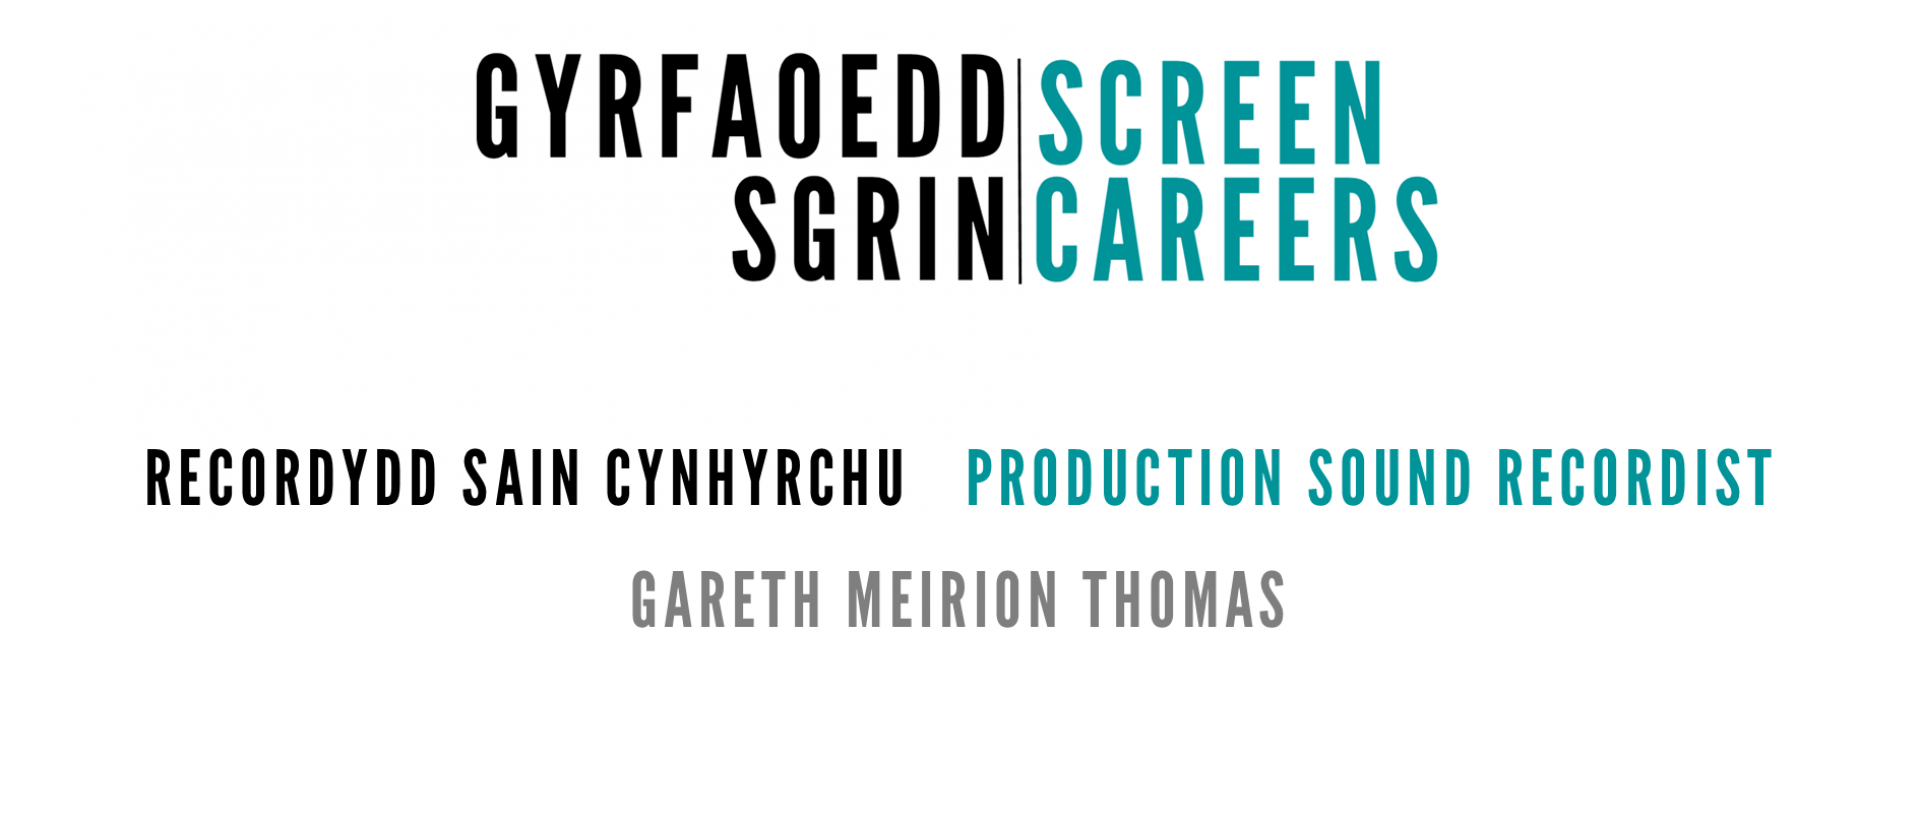 screen careers logo